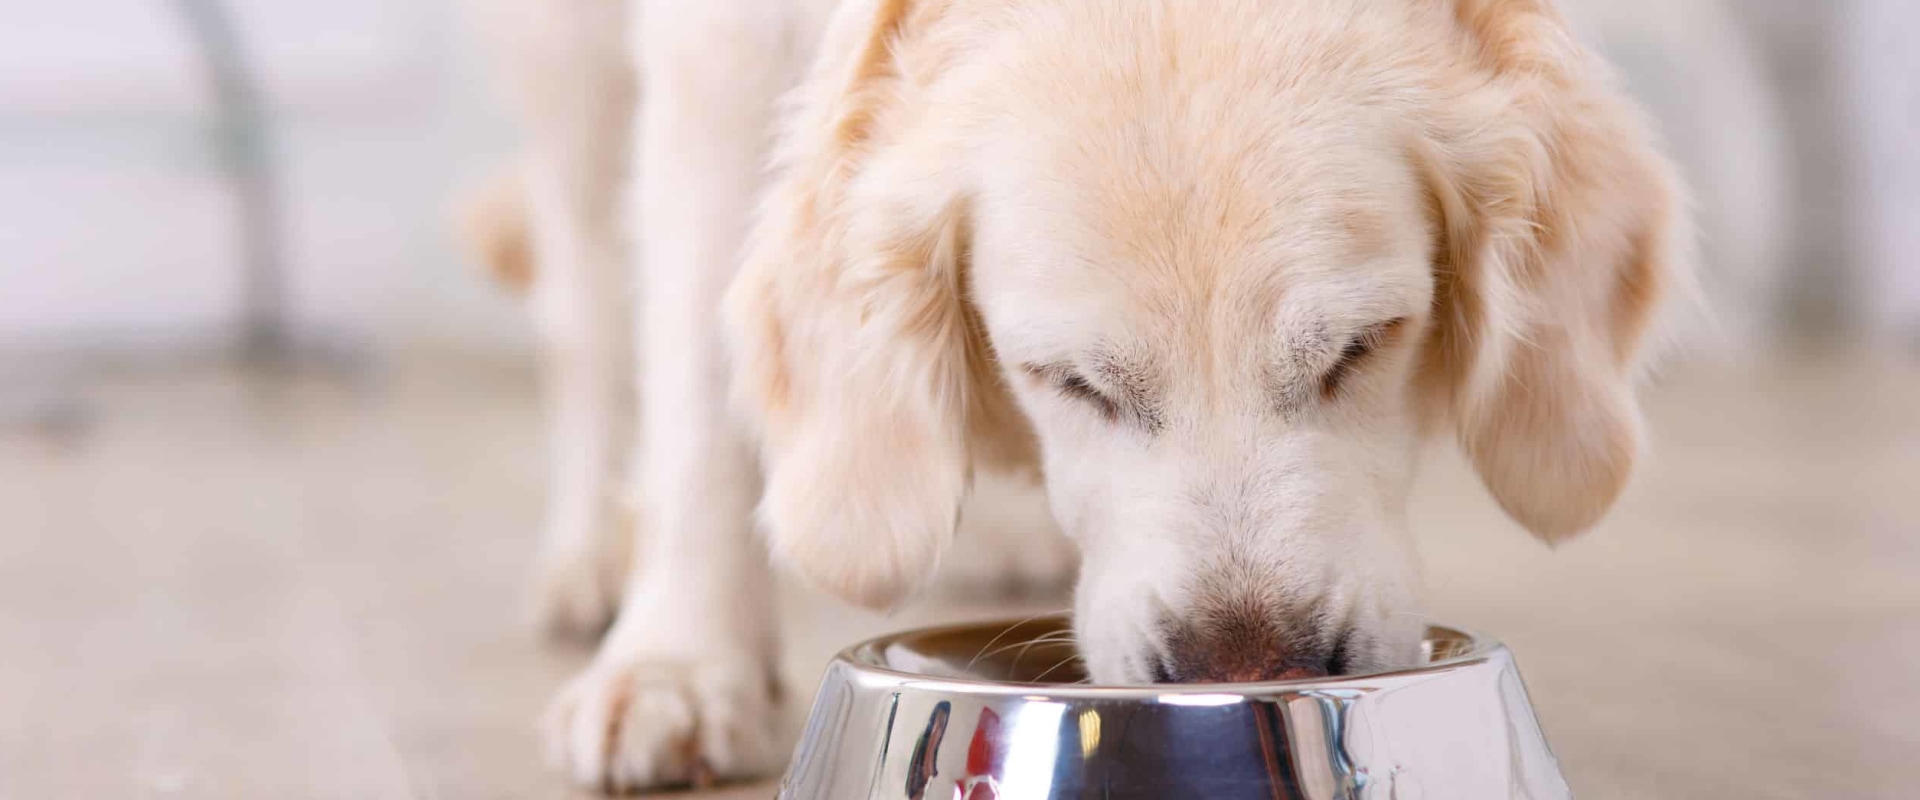 Waarom zijn roestvrijstalen kommen beter voor honden?